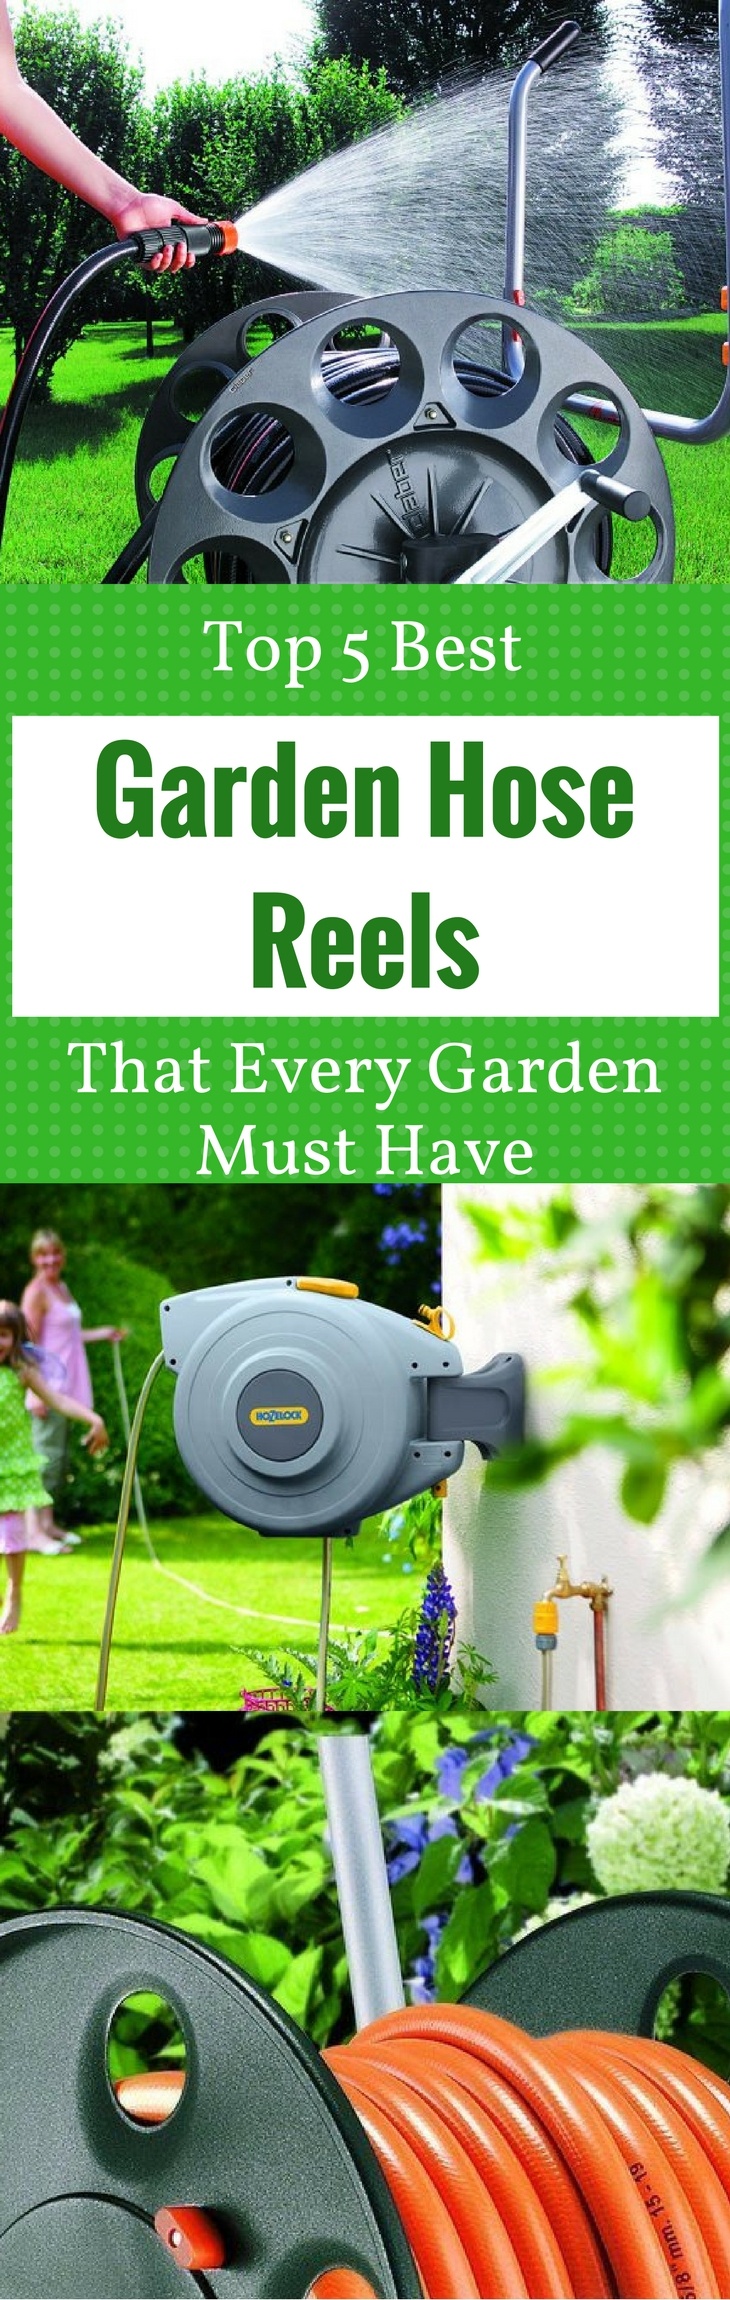 Top 5 Best - Garden Hose Reels That Every Garden Must Have 